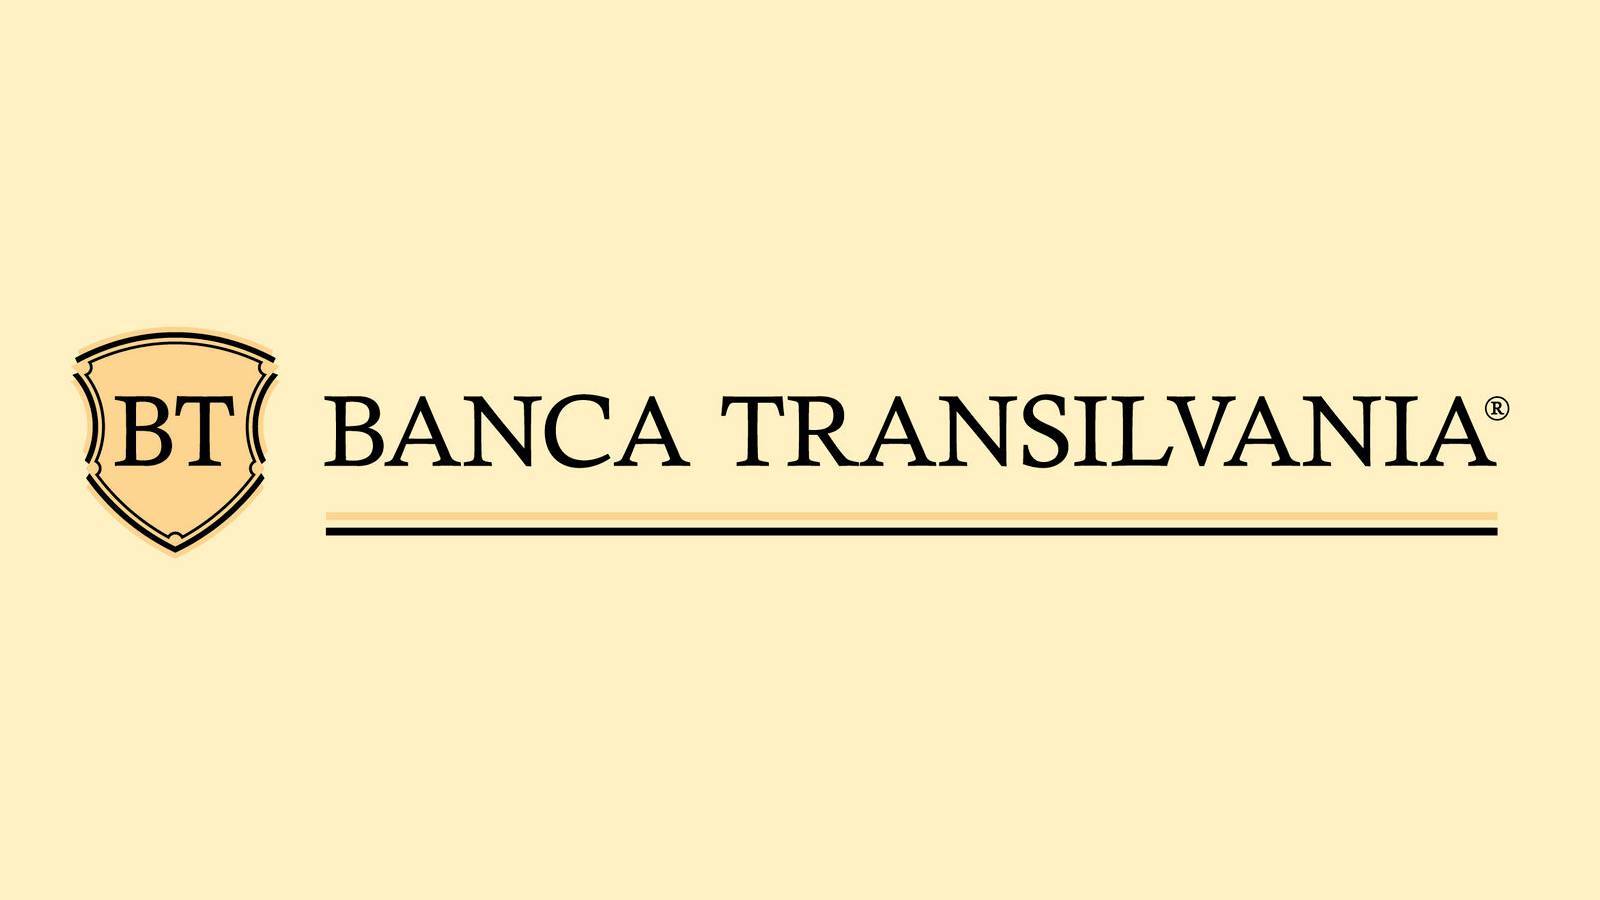 BANCA Transilvania Officiële maatregelen LAATSTE MOMENT Miljoenen Roemeense klanten